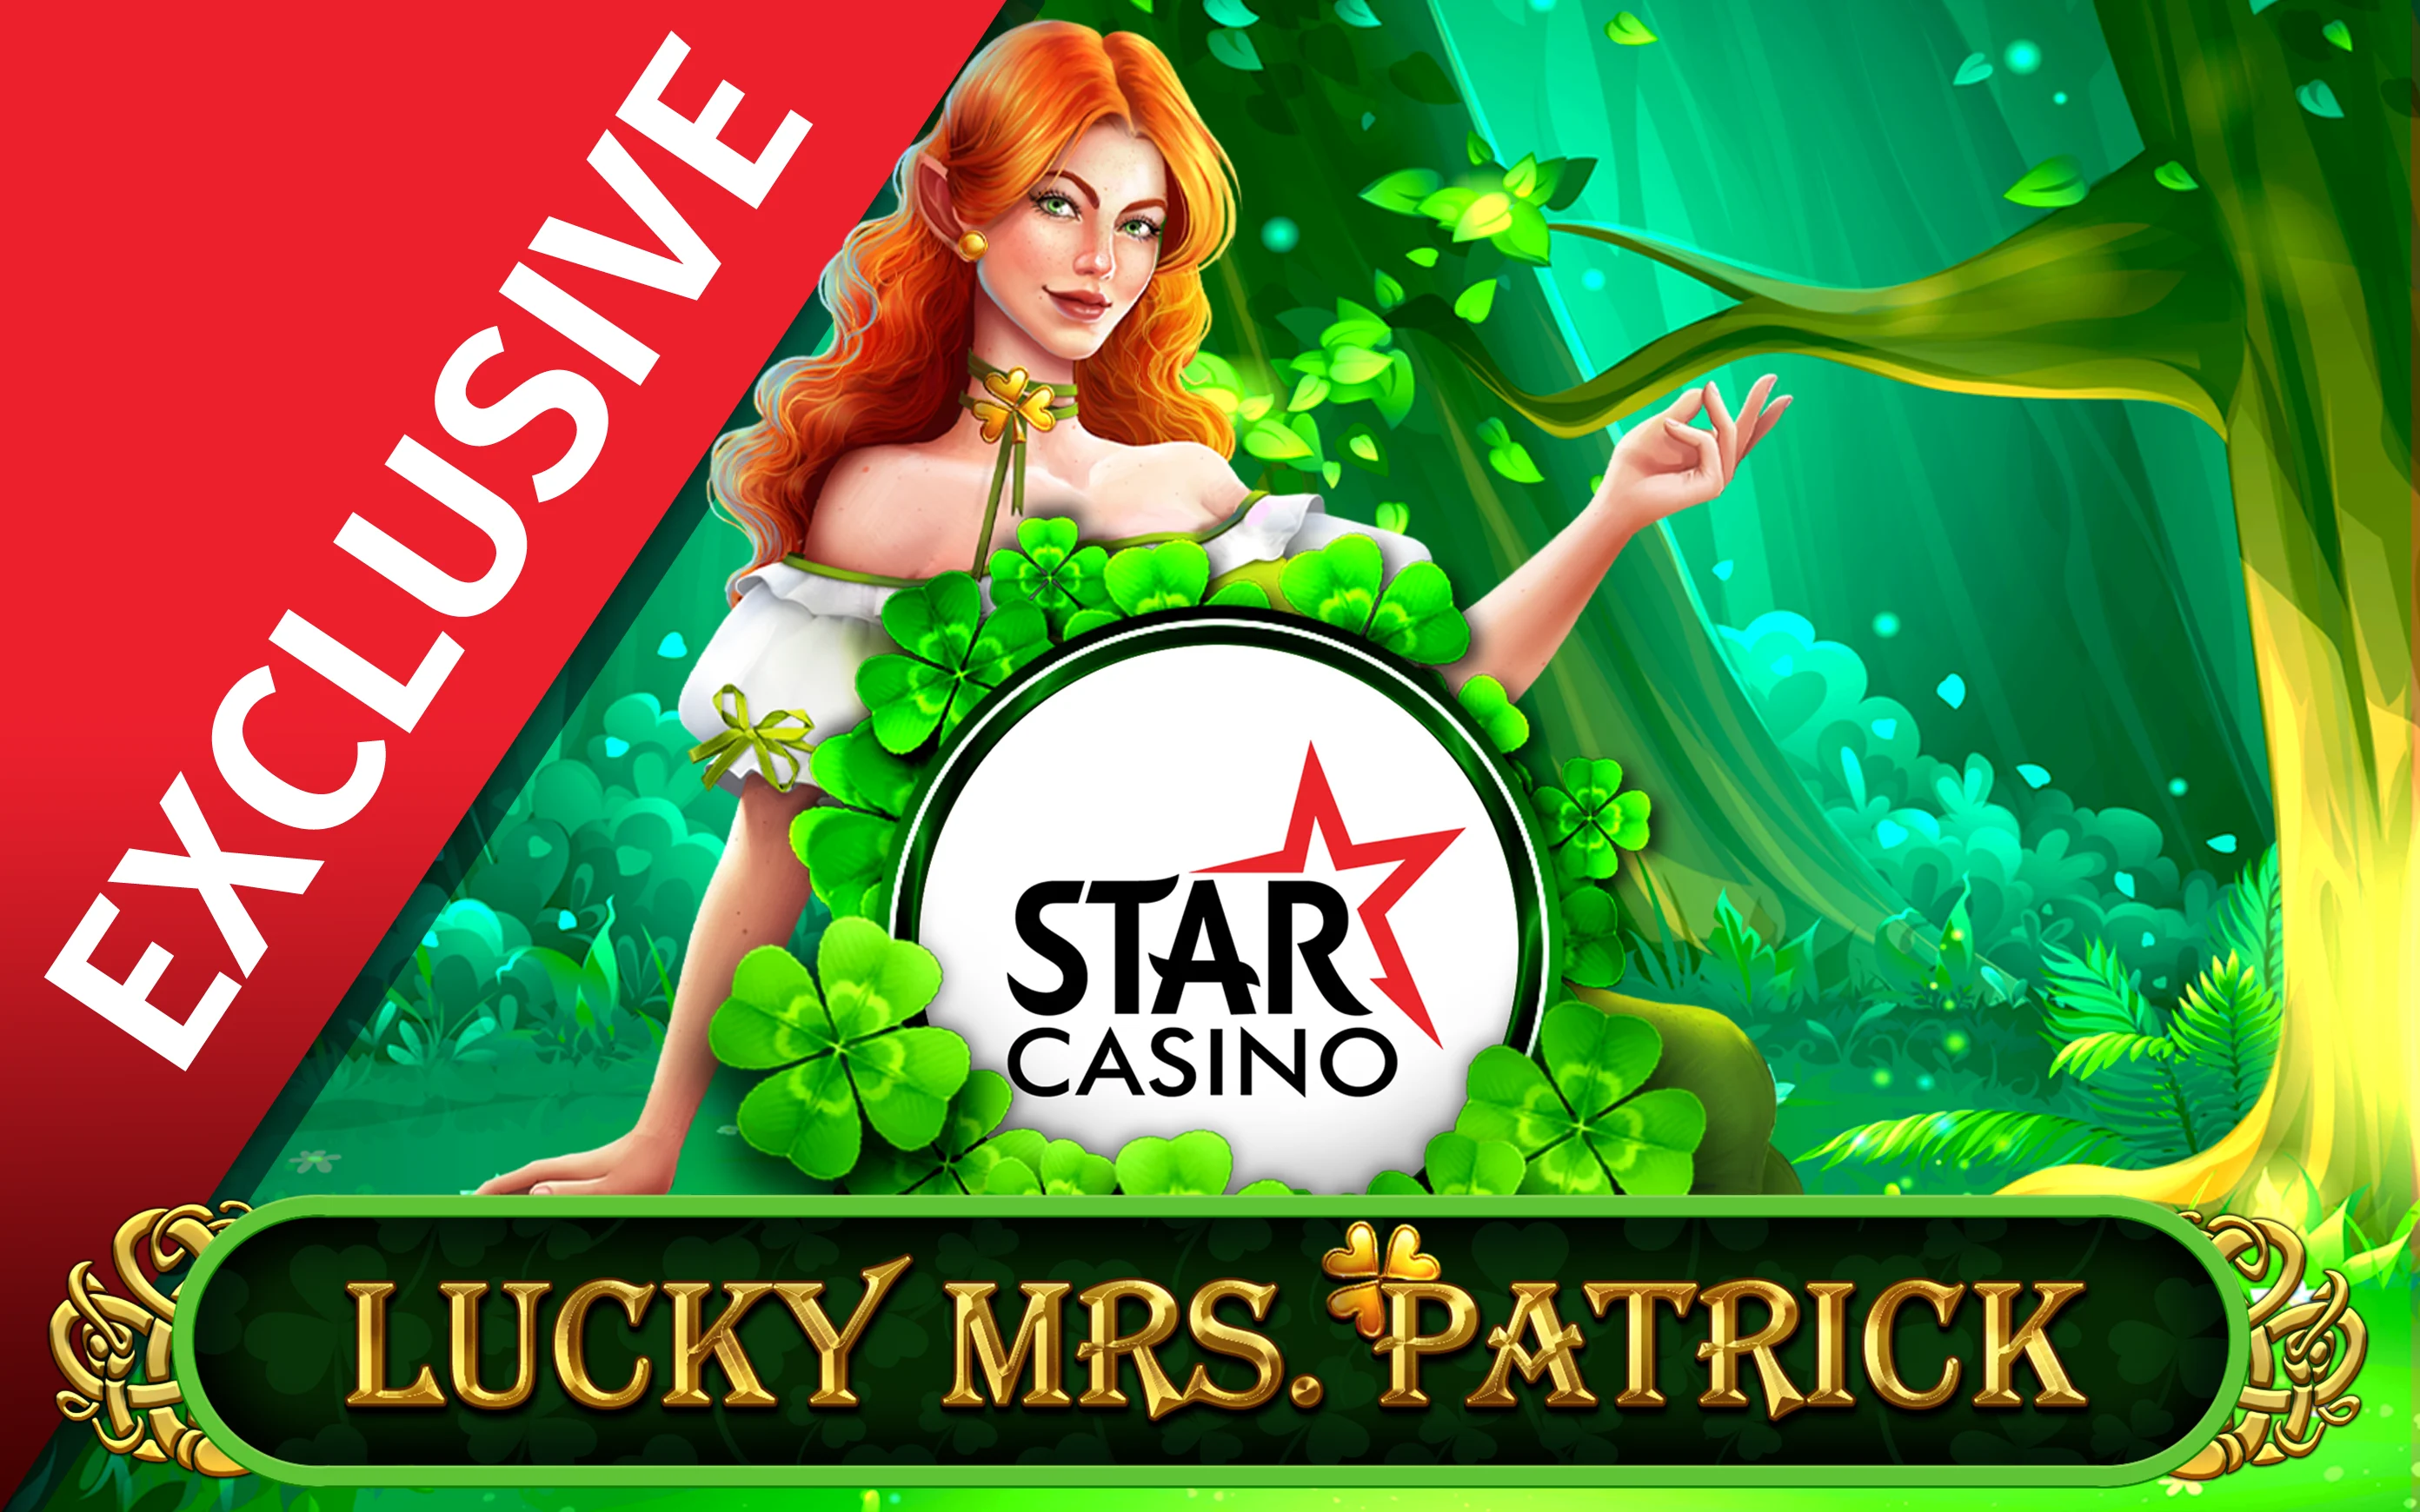 Spielen Sie Starcasino Lucky Mrs Patrick auf Starcasino.be-Online-Casino